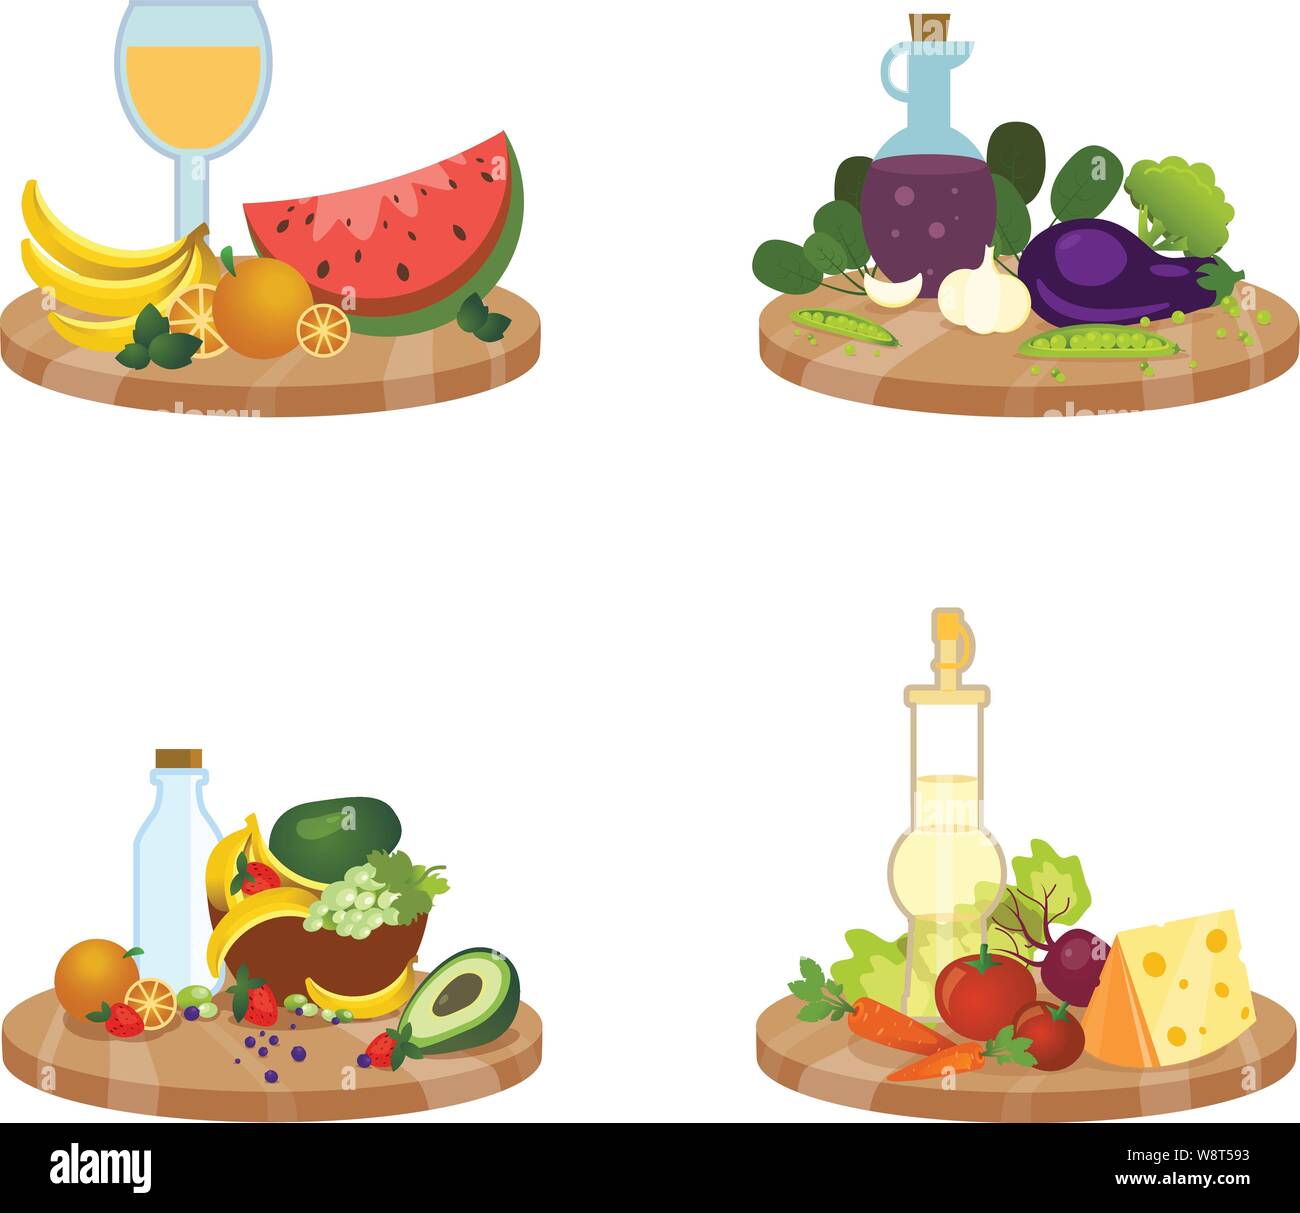 Vektor einrichten der Gerichte mit Obst und Gemüse, eine Sammlung von 4 Stillleben auf Platten mit einem Bündel von süßen Beeren, einen saftigen Apfel, mil Stock Vektor